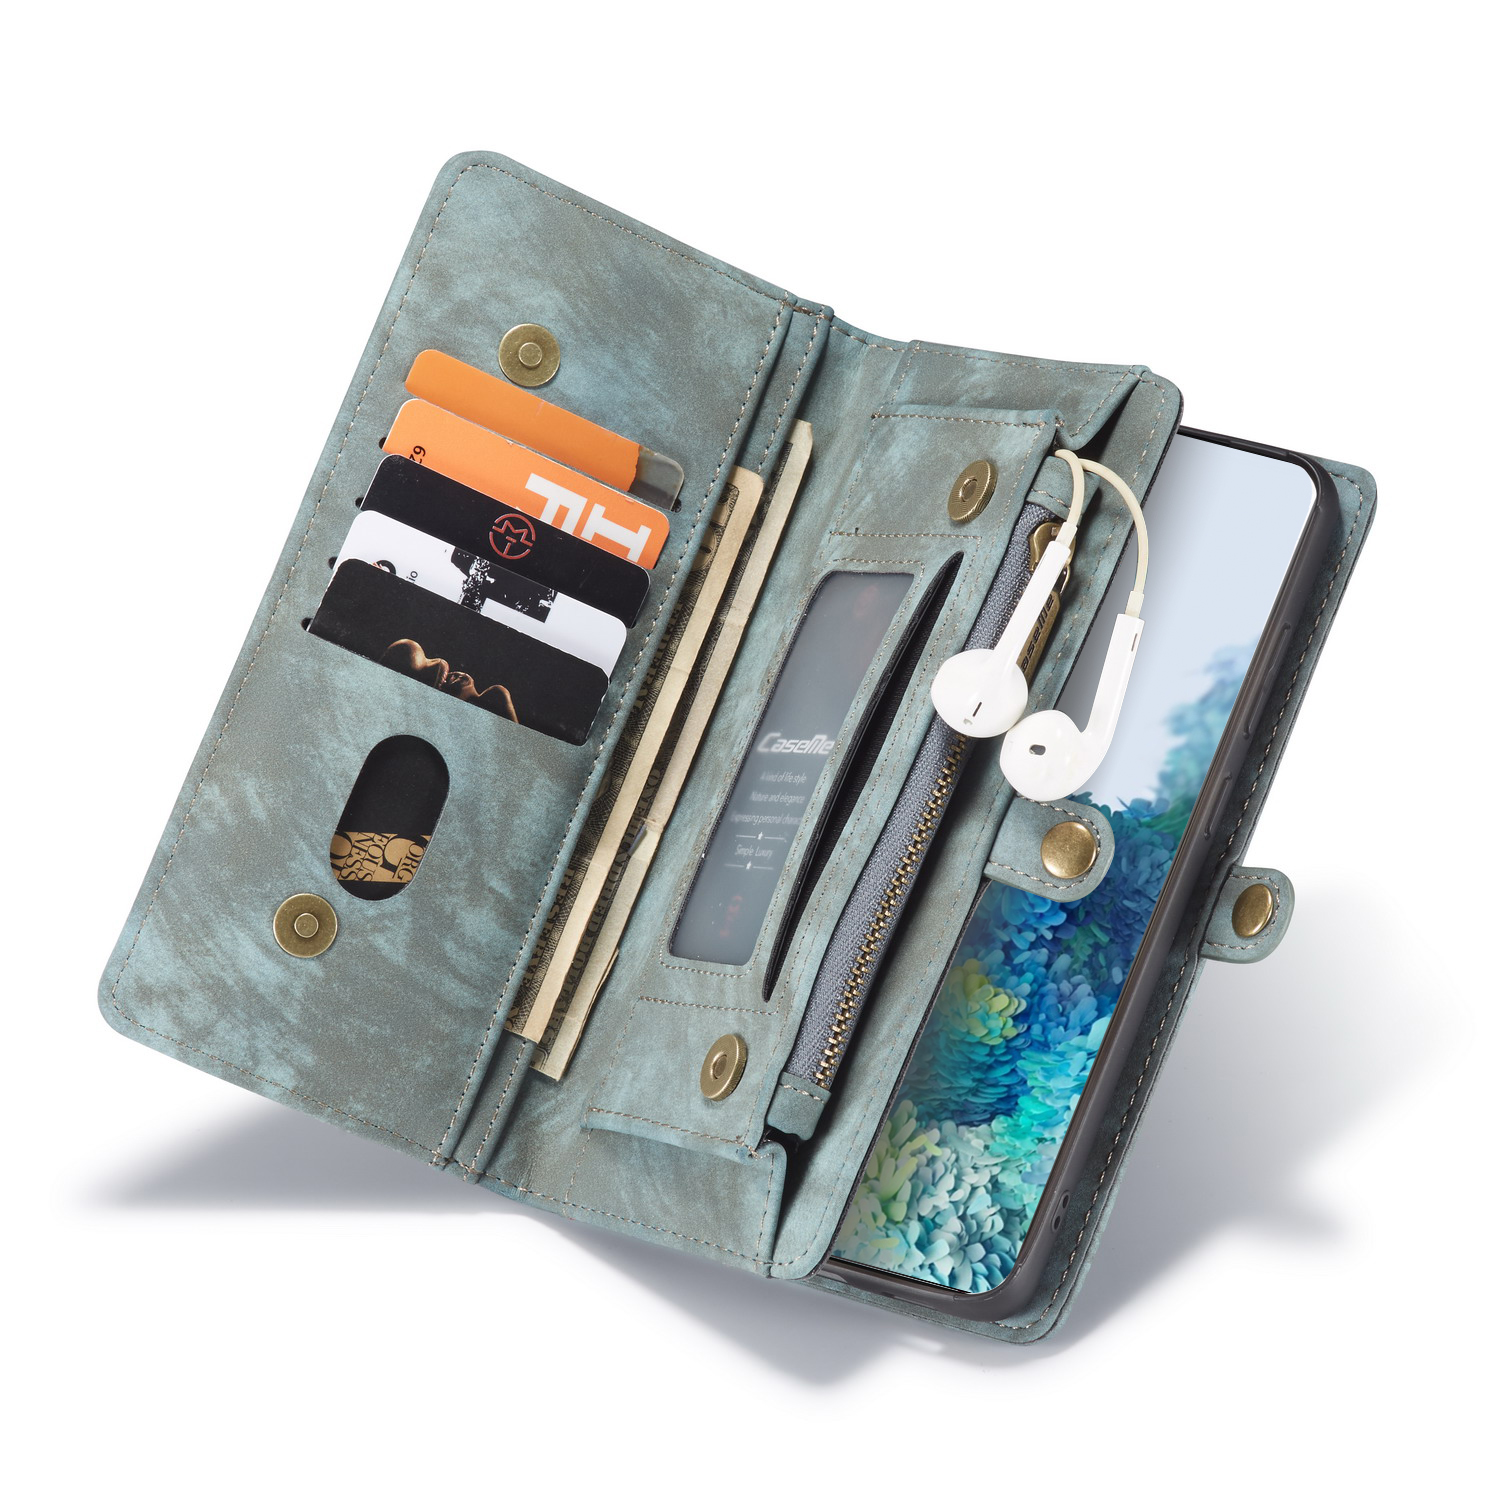 CaseMe 008 Series Folio Zipper Wallet Style Detachable Leather Cover C